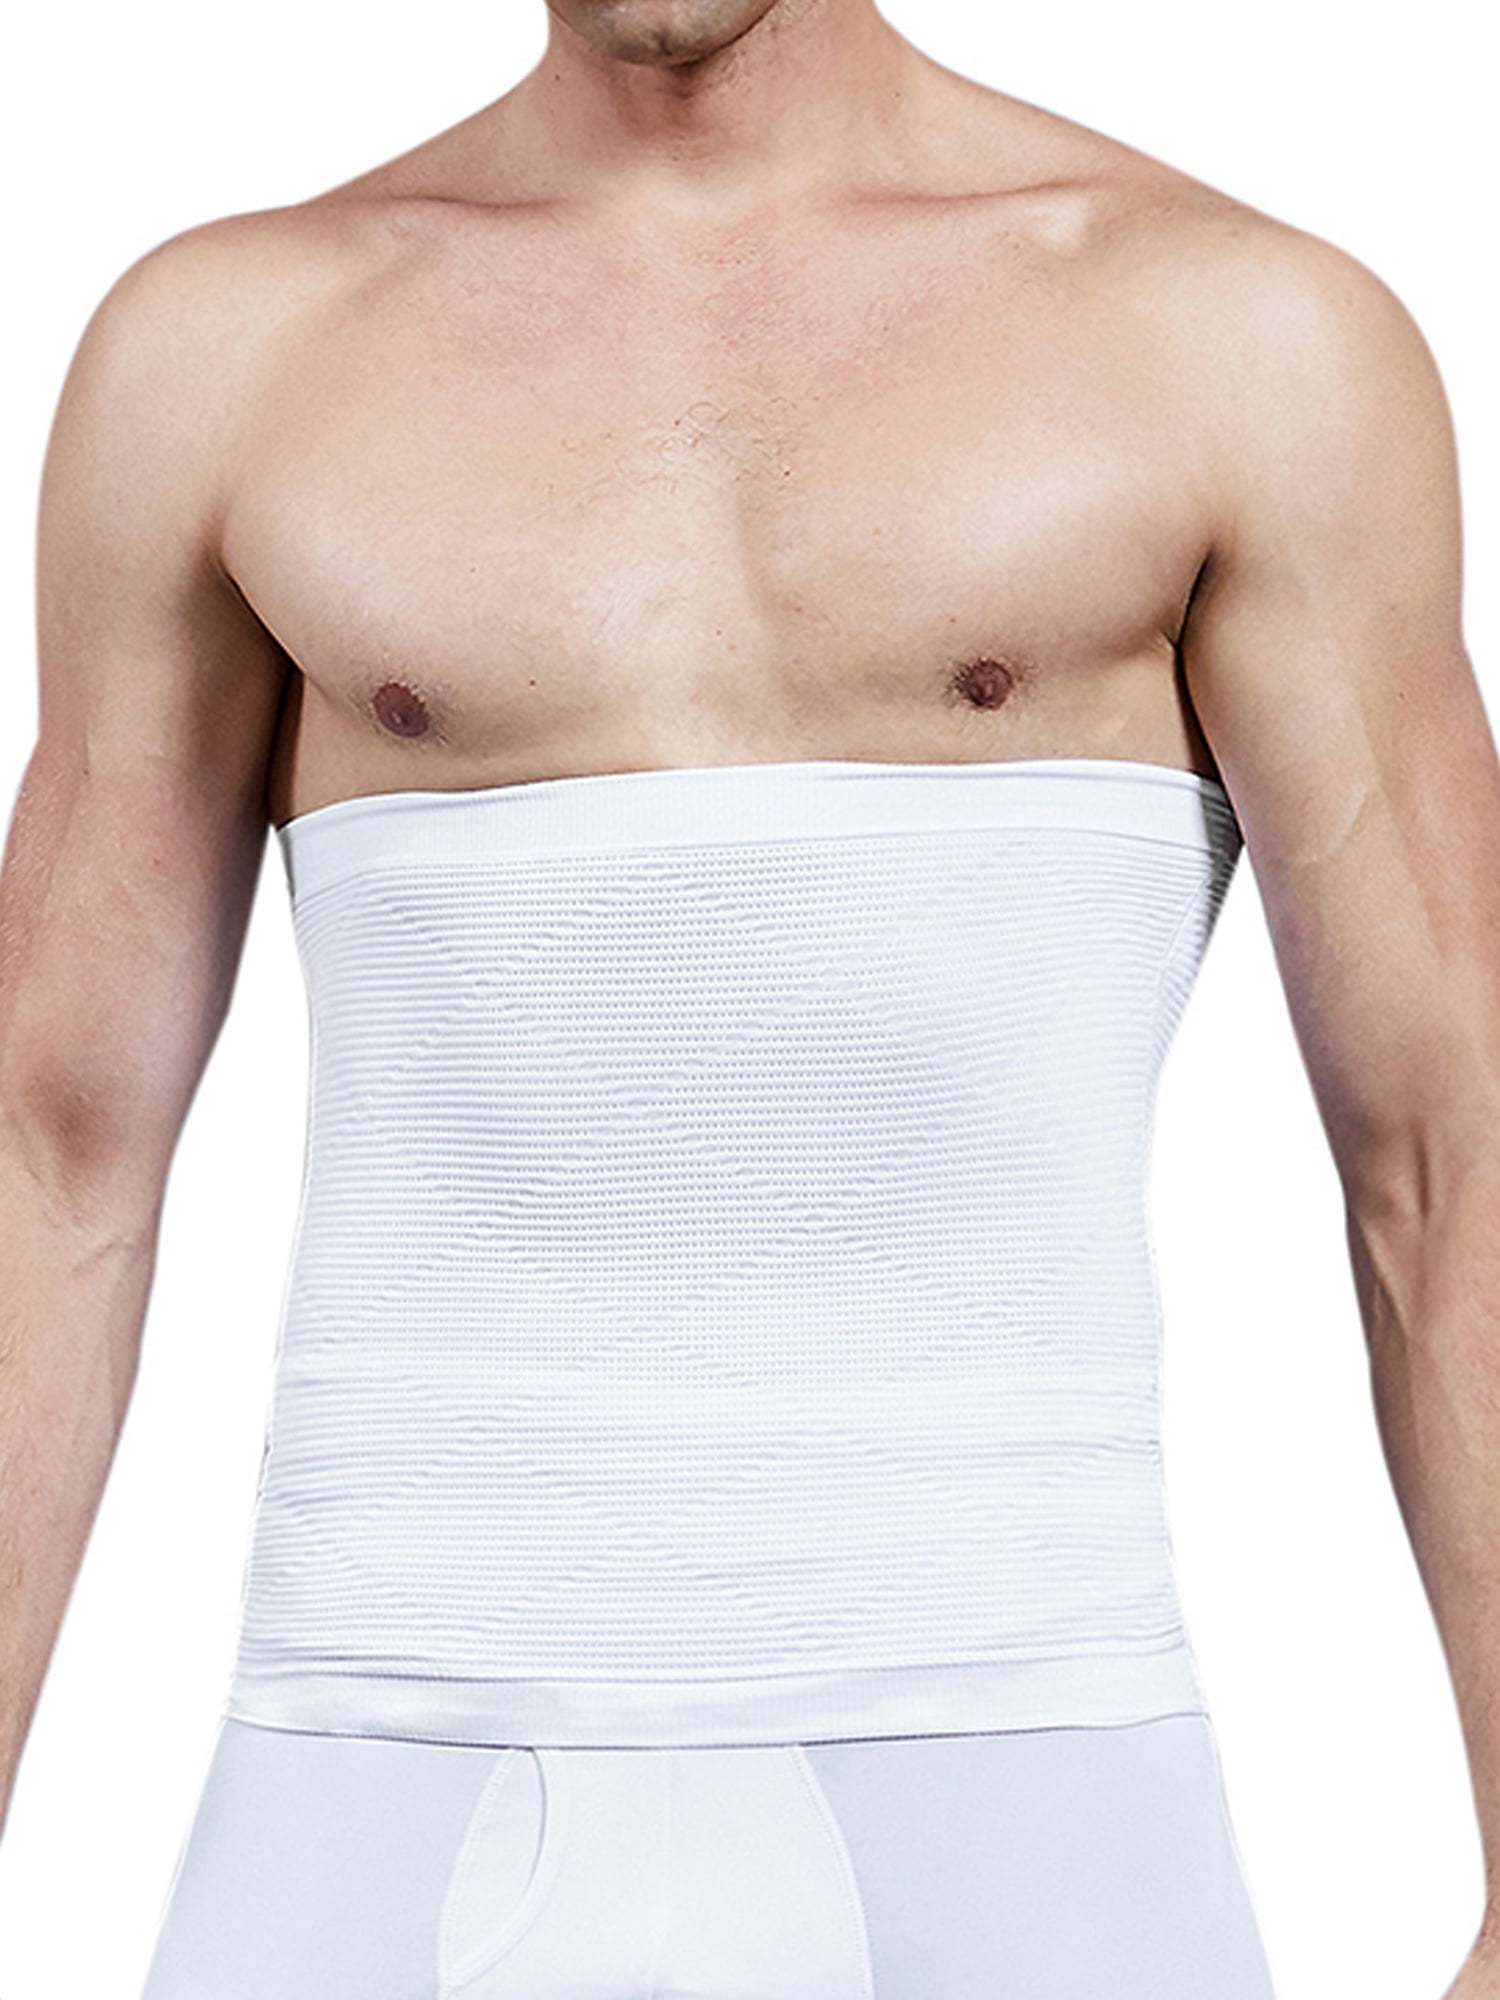 Men Girdle Pants Body Shaper Belly High Waist Tummy Tuck Mens Body Shaper Pants Mens Slimming Sauna Pants Hot Sweat for Body Shaper 